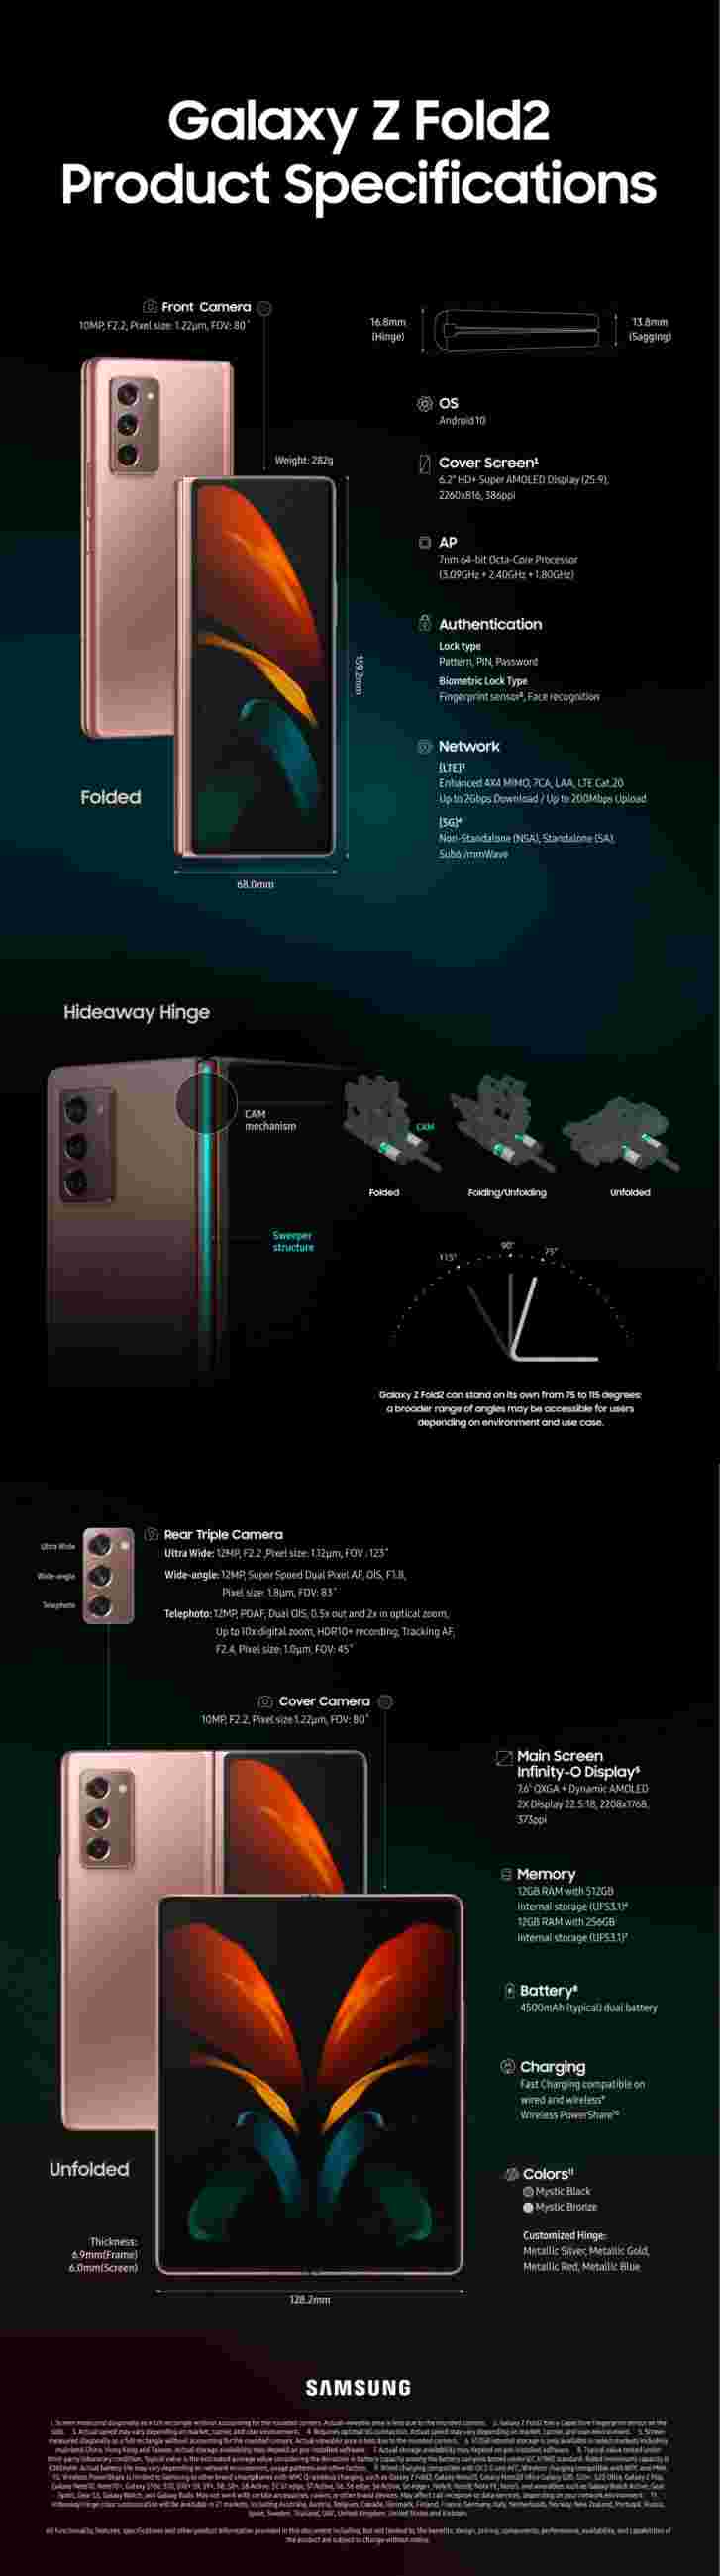 三星的Galaxy Z Fold2 Infographic涵盖了基础知识